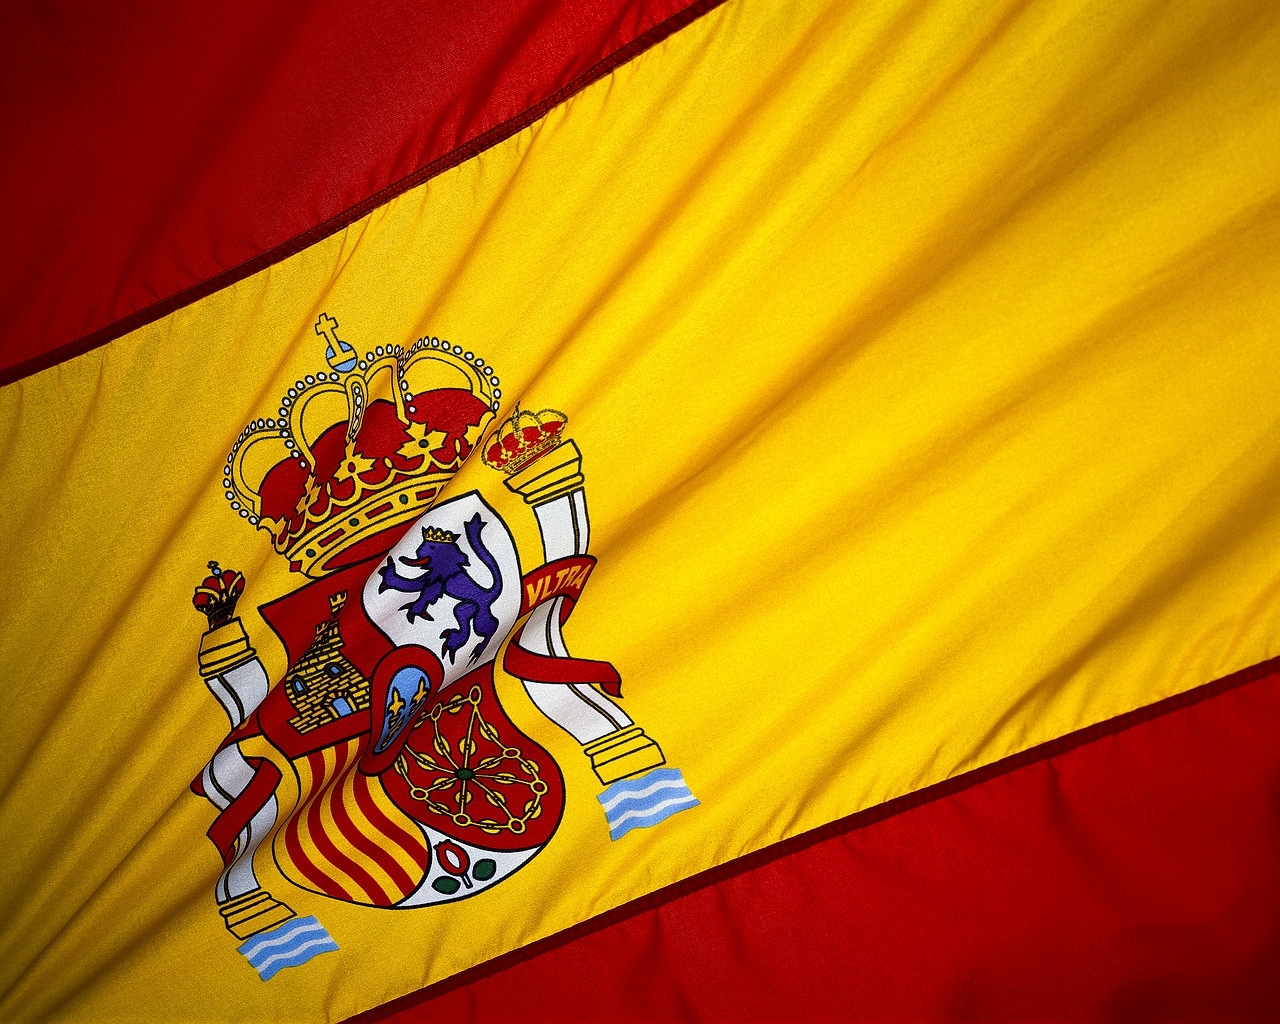 Μειωμένο επιτόκιο για την Ισπανία στη σημερινή δημοπρασία